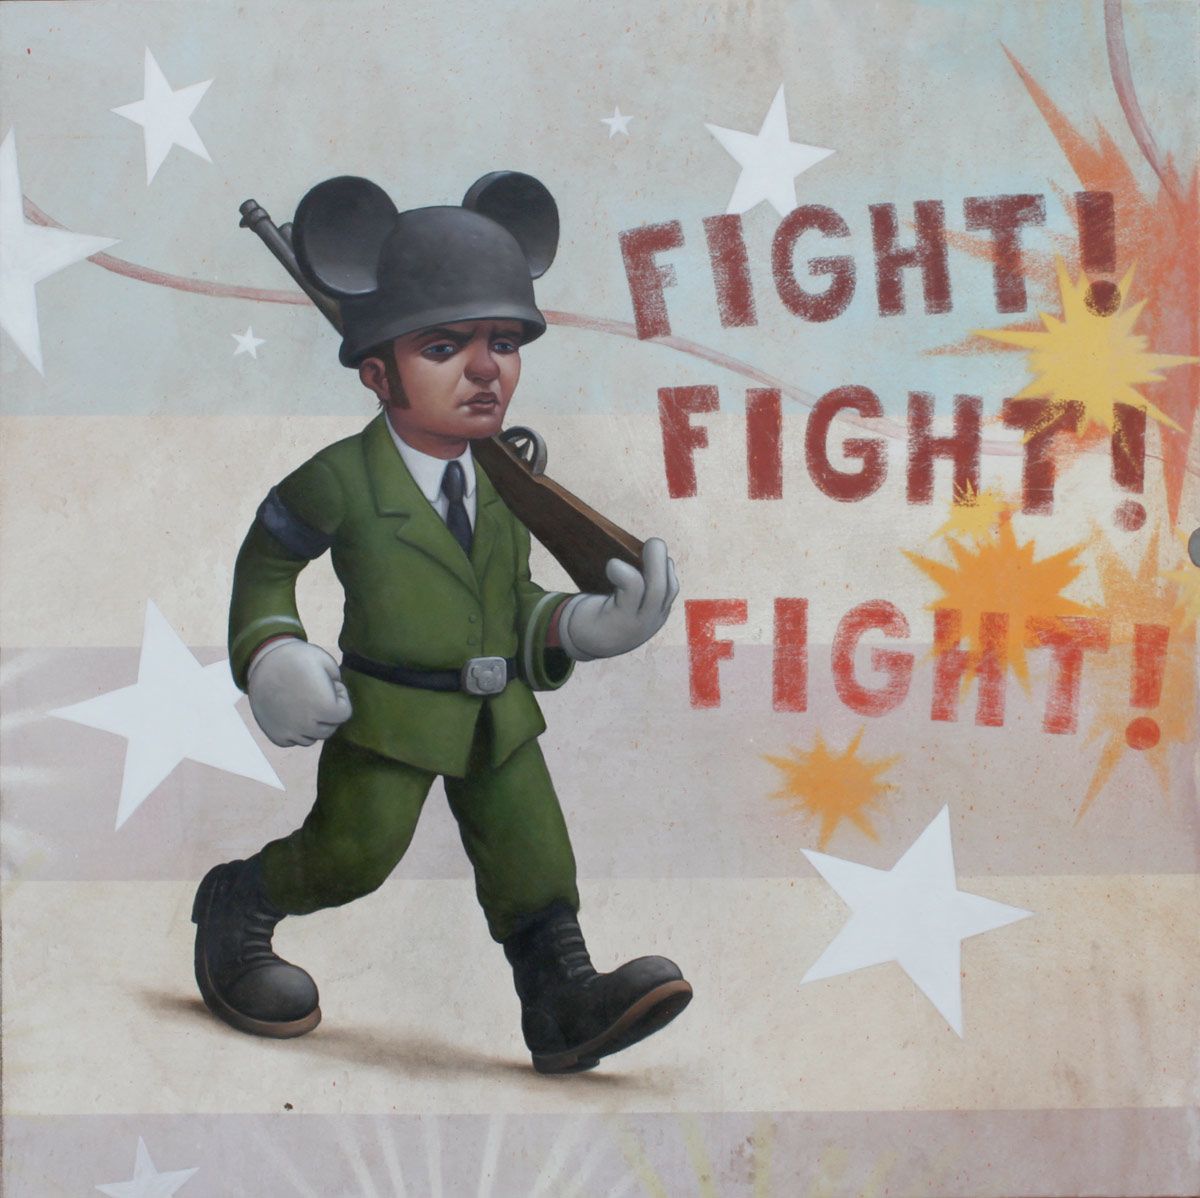 Dob_LG_Fight-Fight-Fight